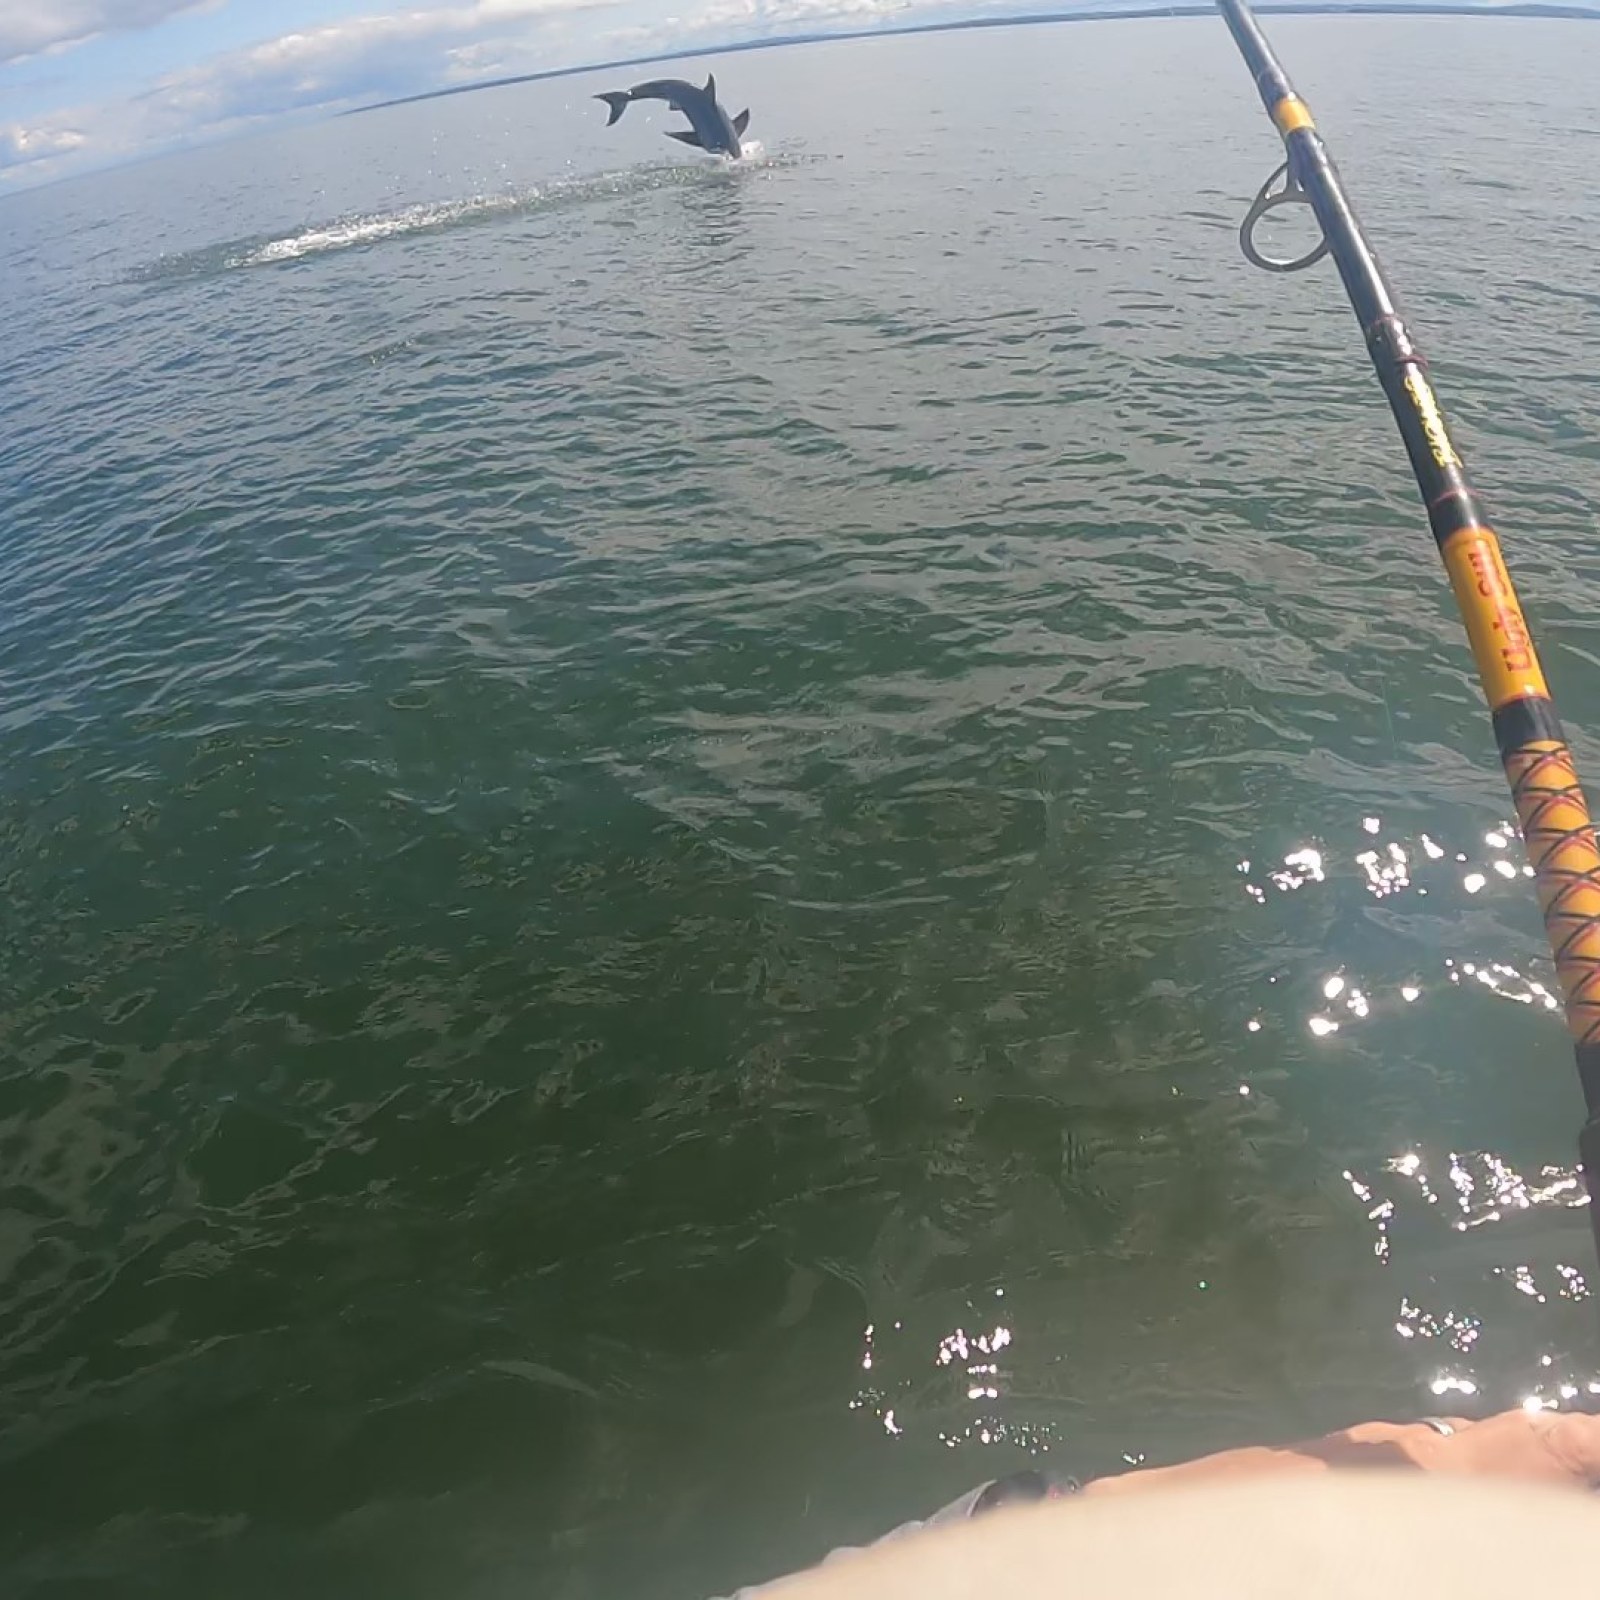 Man Fishing on His Kayak Hooks Great White Shark in Shocking Video